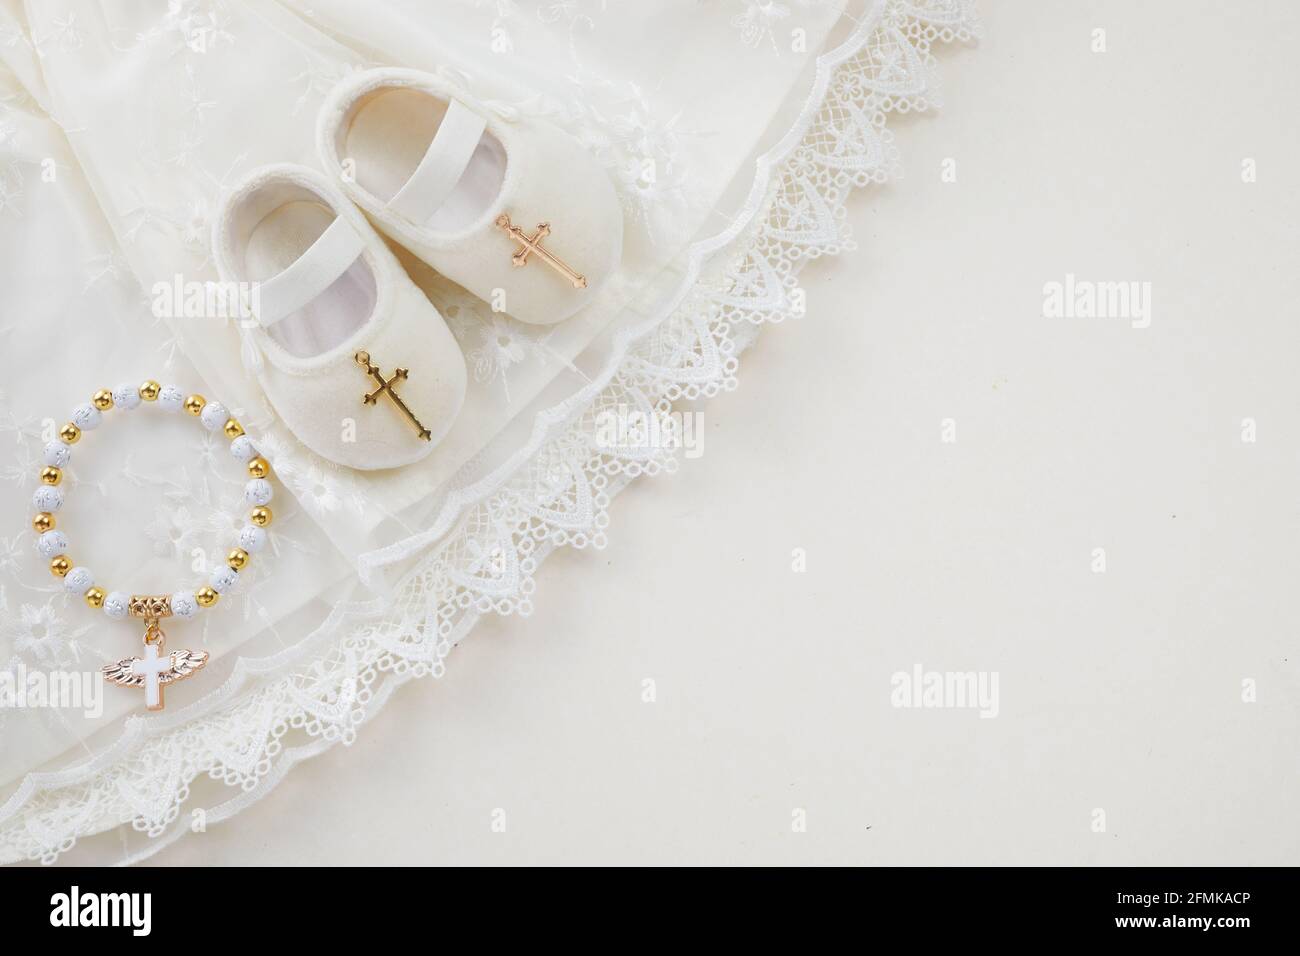 Bautizo de fondo con el bautismo de ropa de bebé, zapatos, y cruz sobre fondo pastel Foto de stock